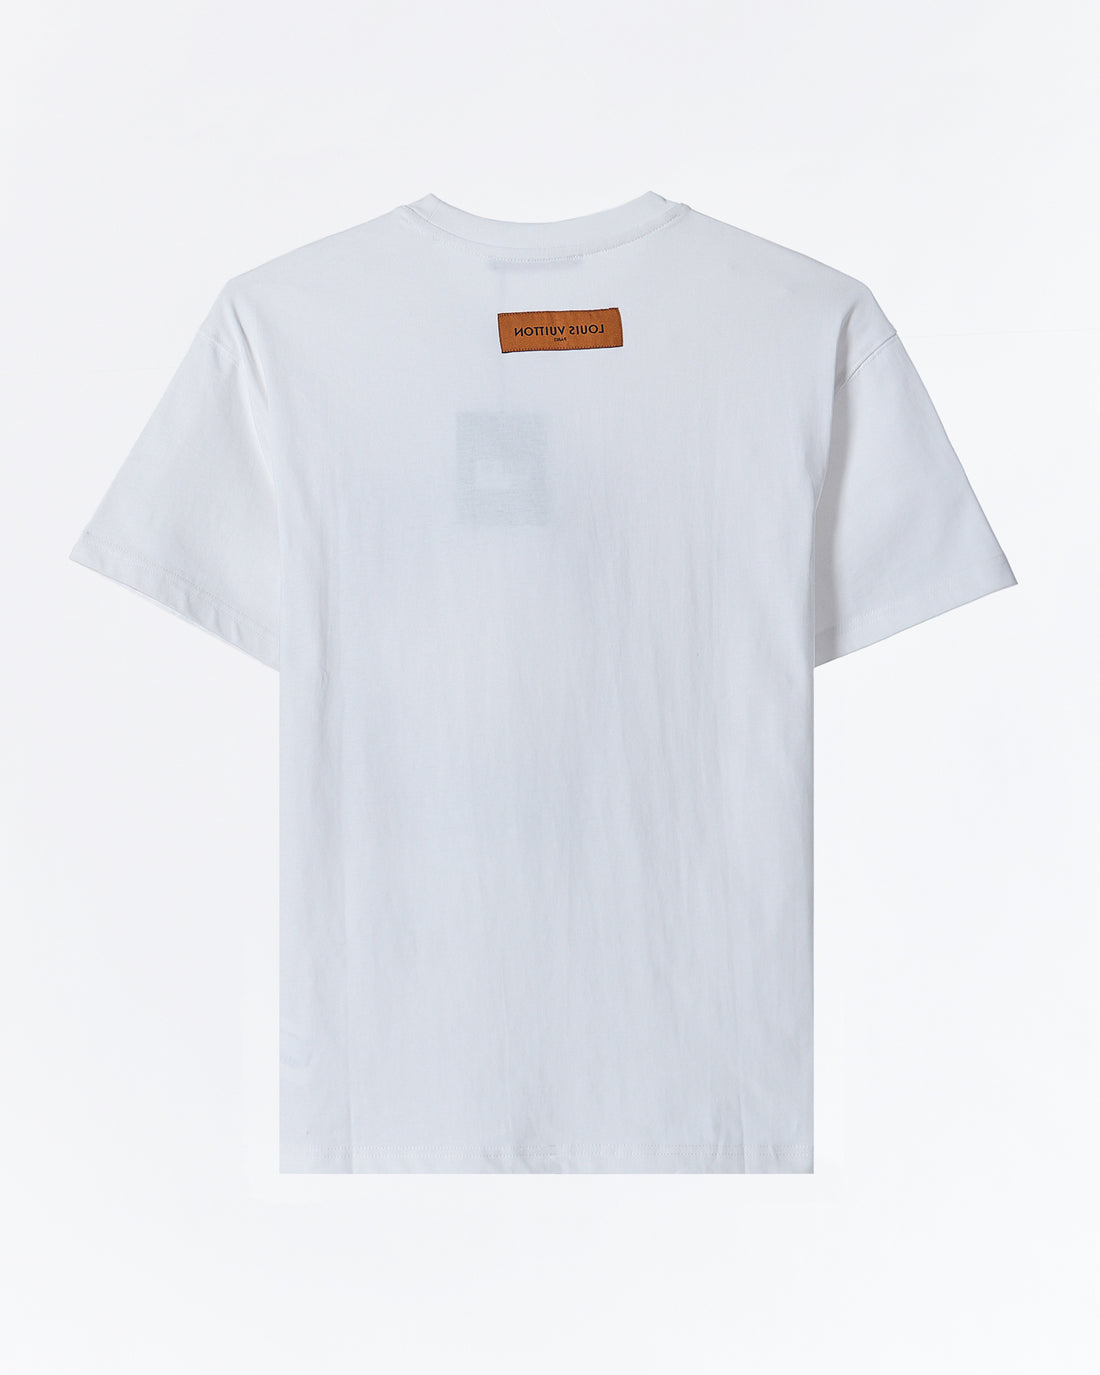 트럼프패 프린트 남성 티셔츠 48.90